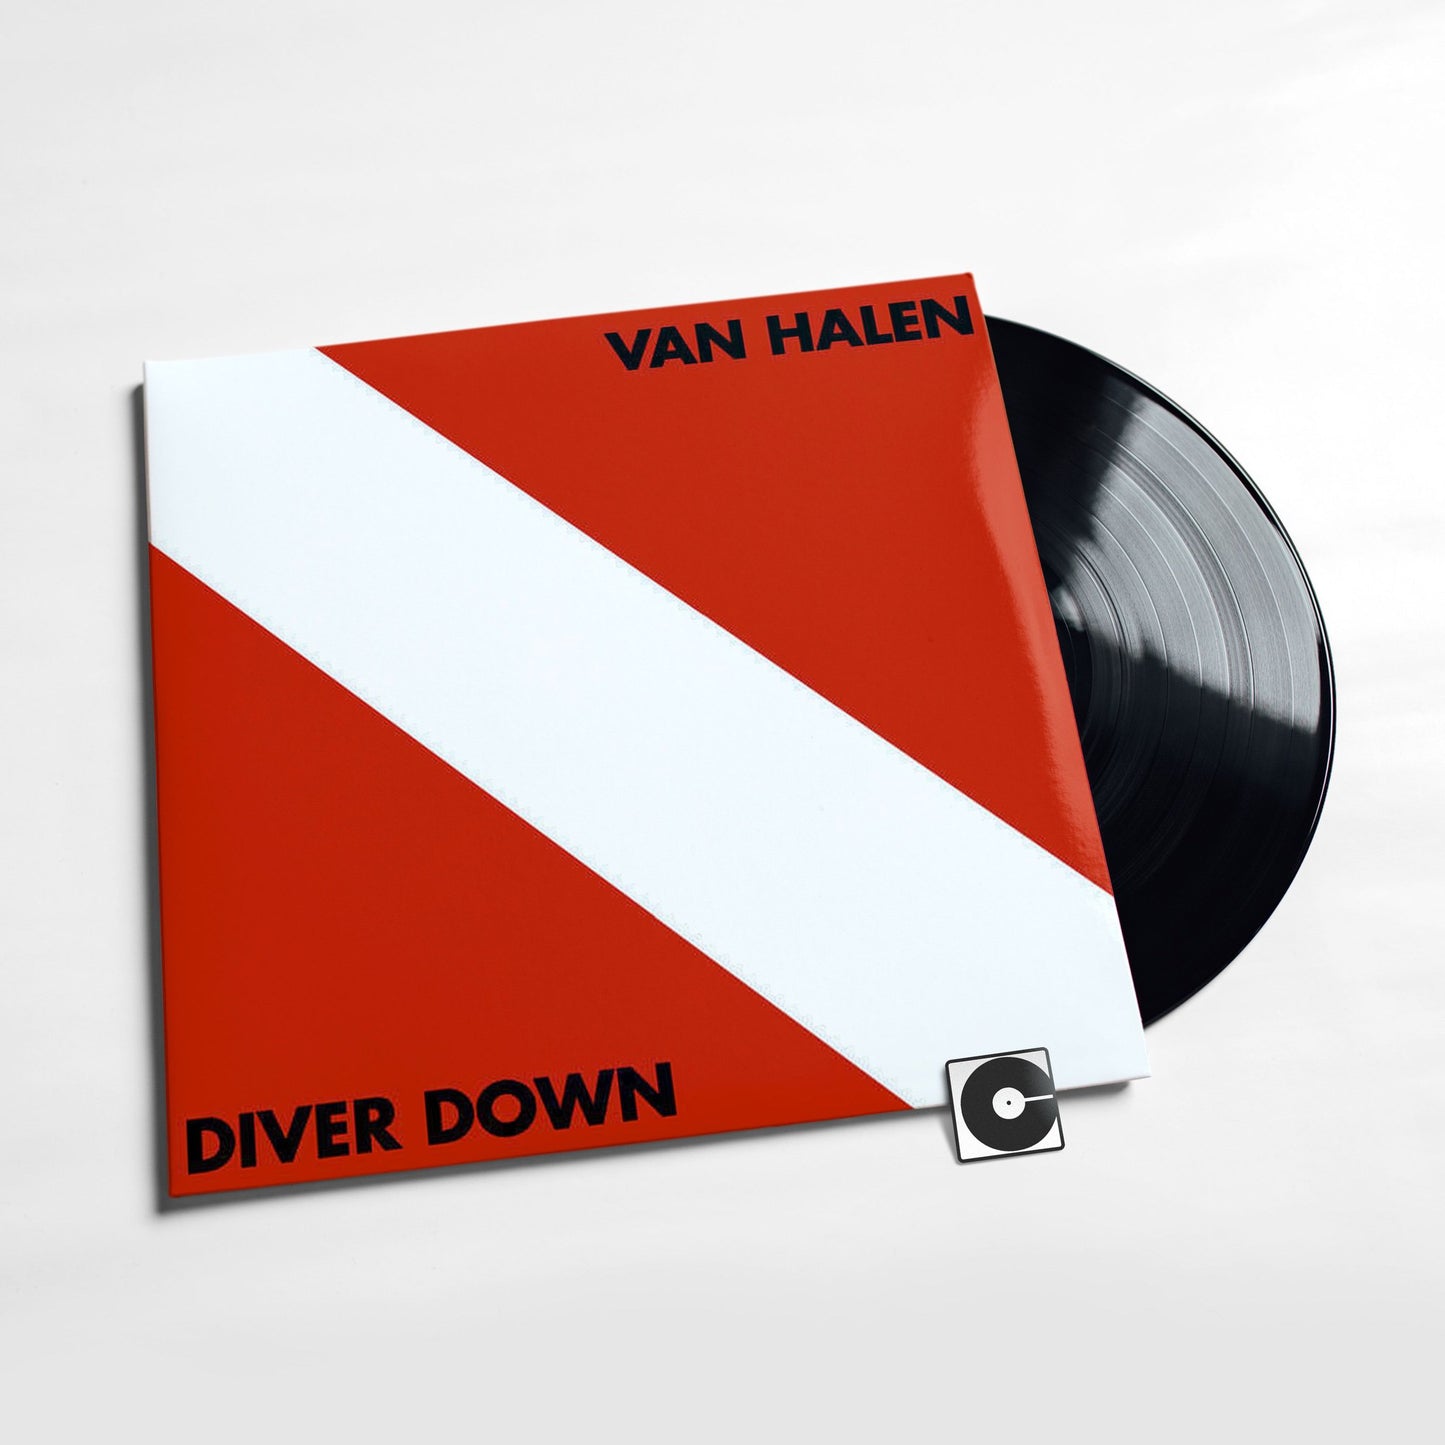 Van Halen - "Diver Down"